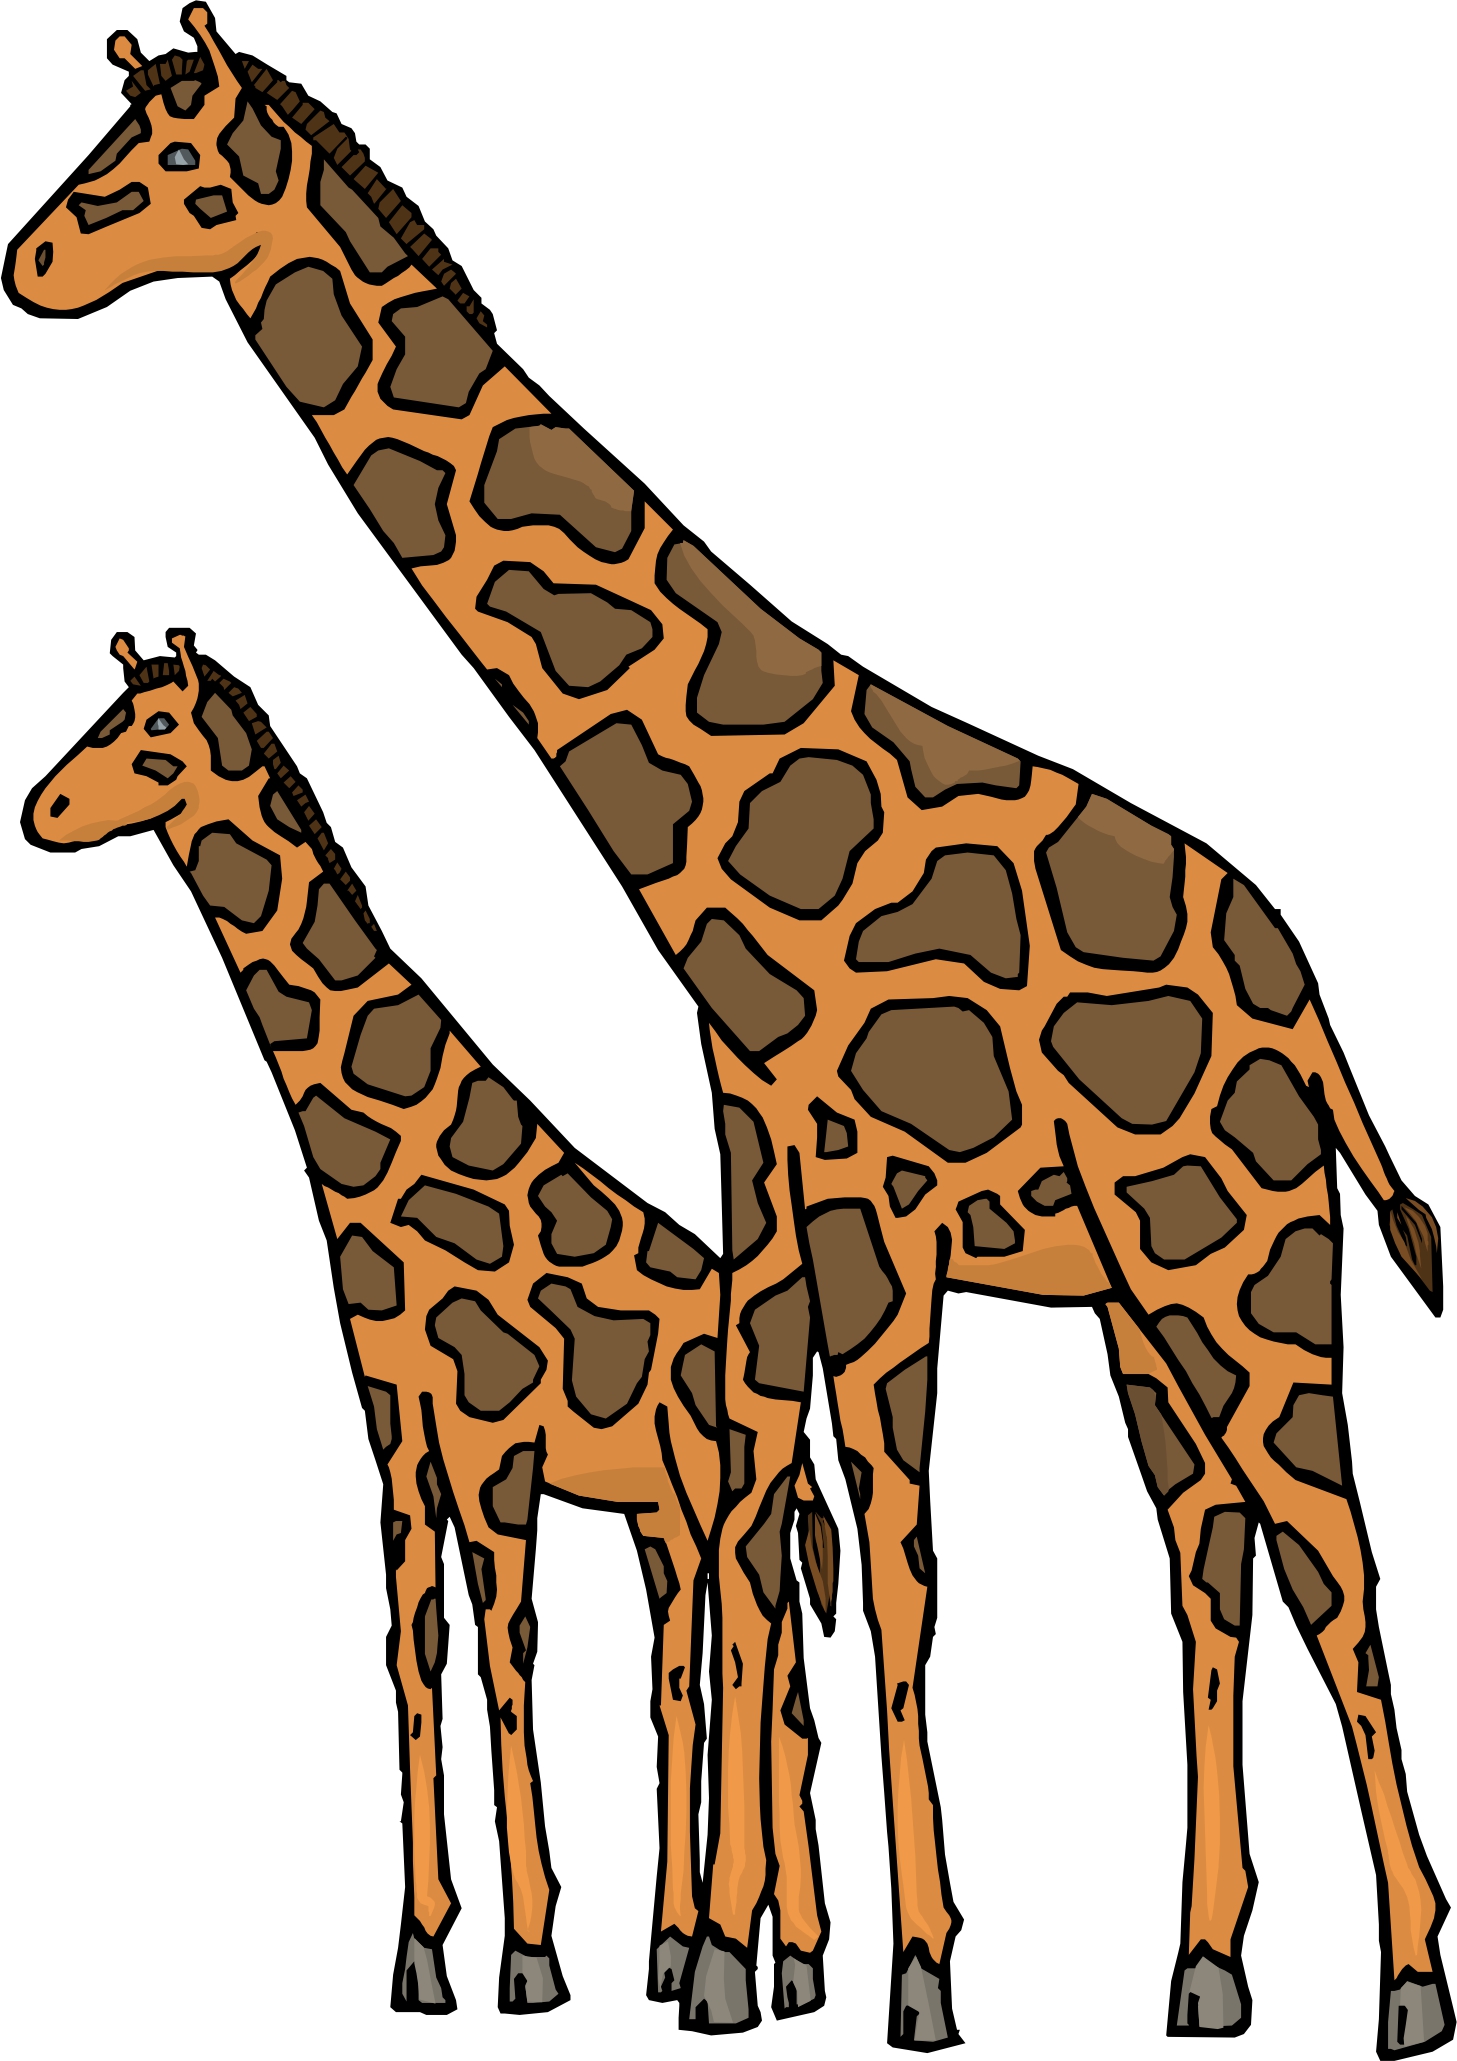 2 giraffes clipart - Clip Art Library